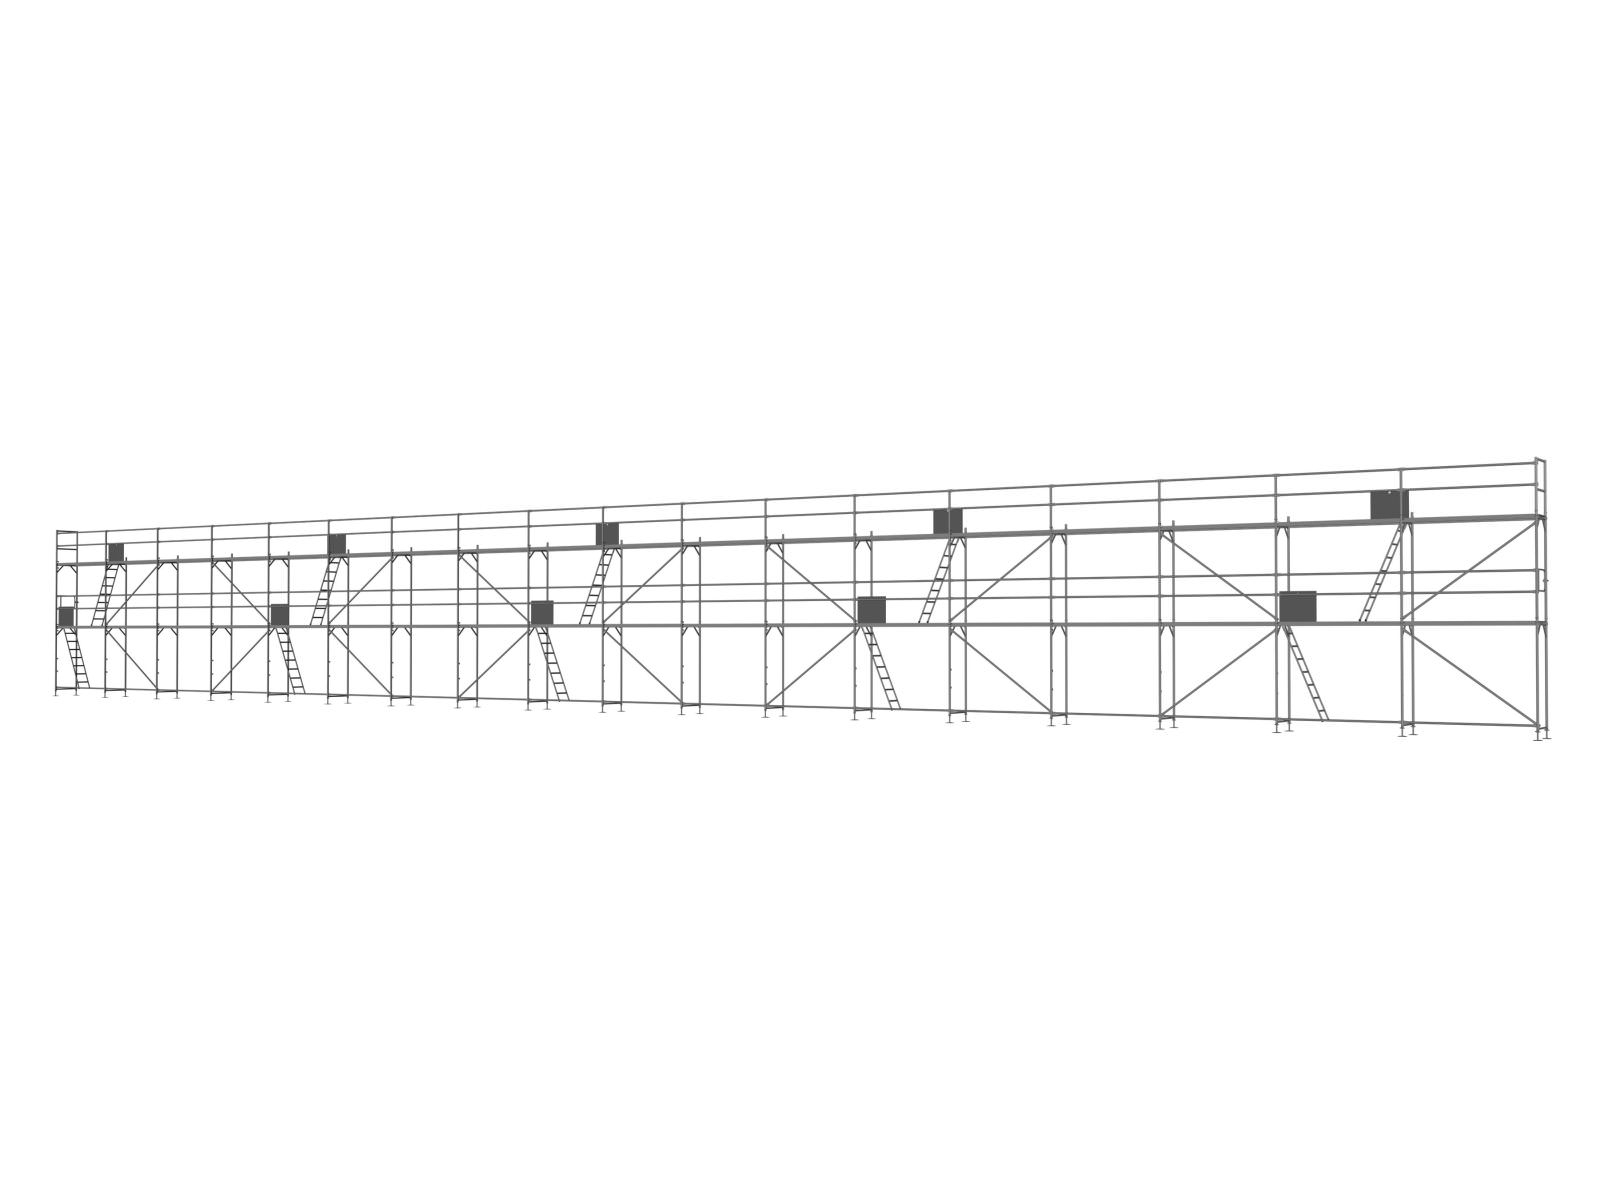 Alu Traufseitengerüst 270 qm - 2,5 m Felder - 45 m lang - 6 m Arbeitshöhe - Basis-Gerüst inkl. Aufstieg & Befestigung